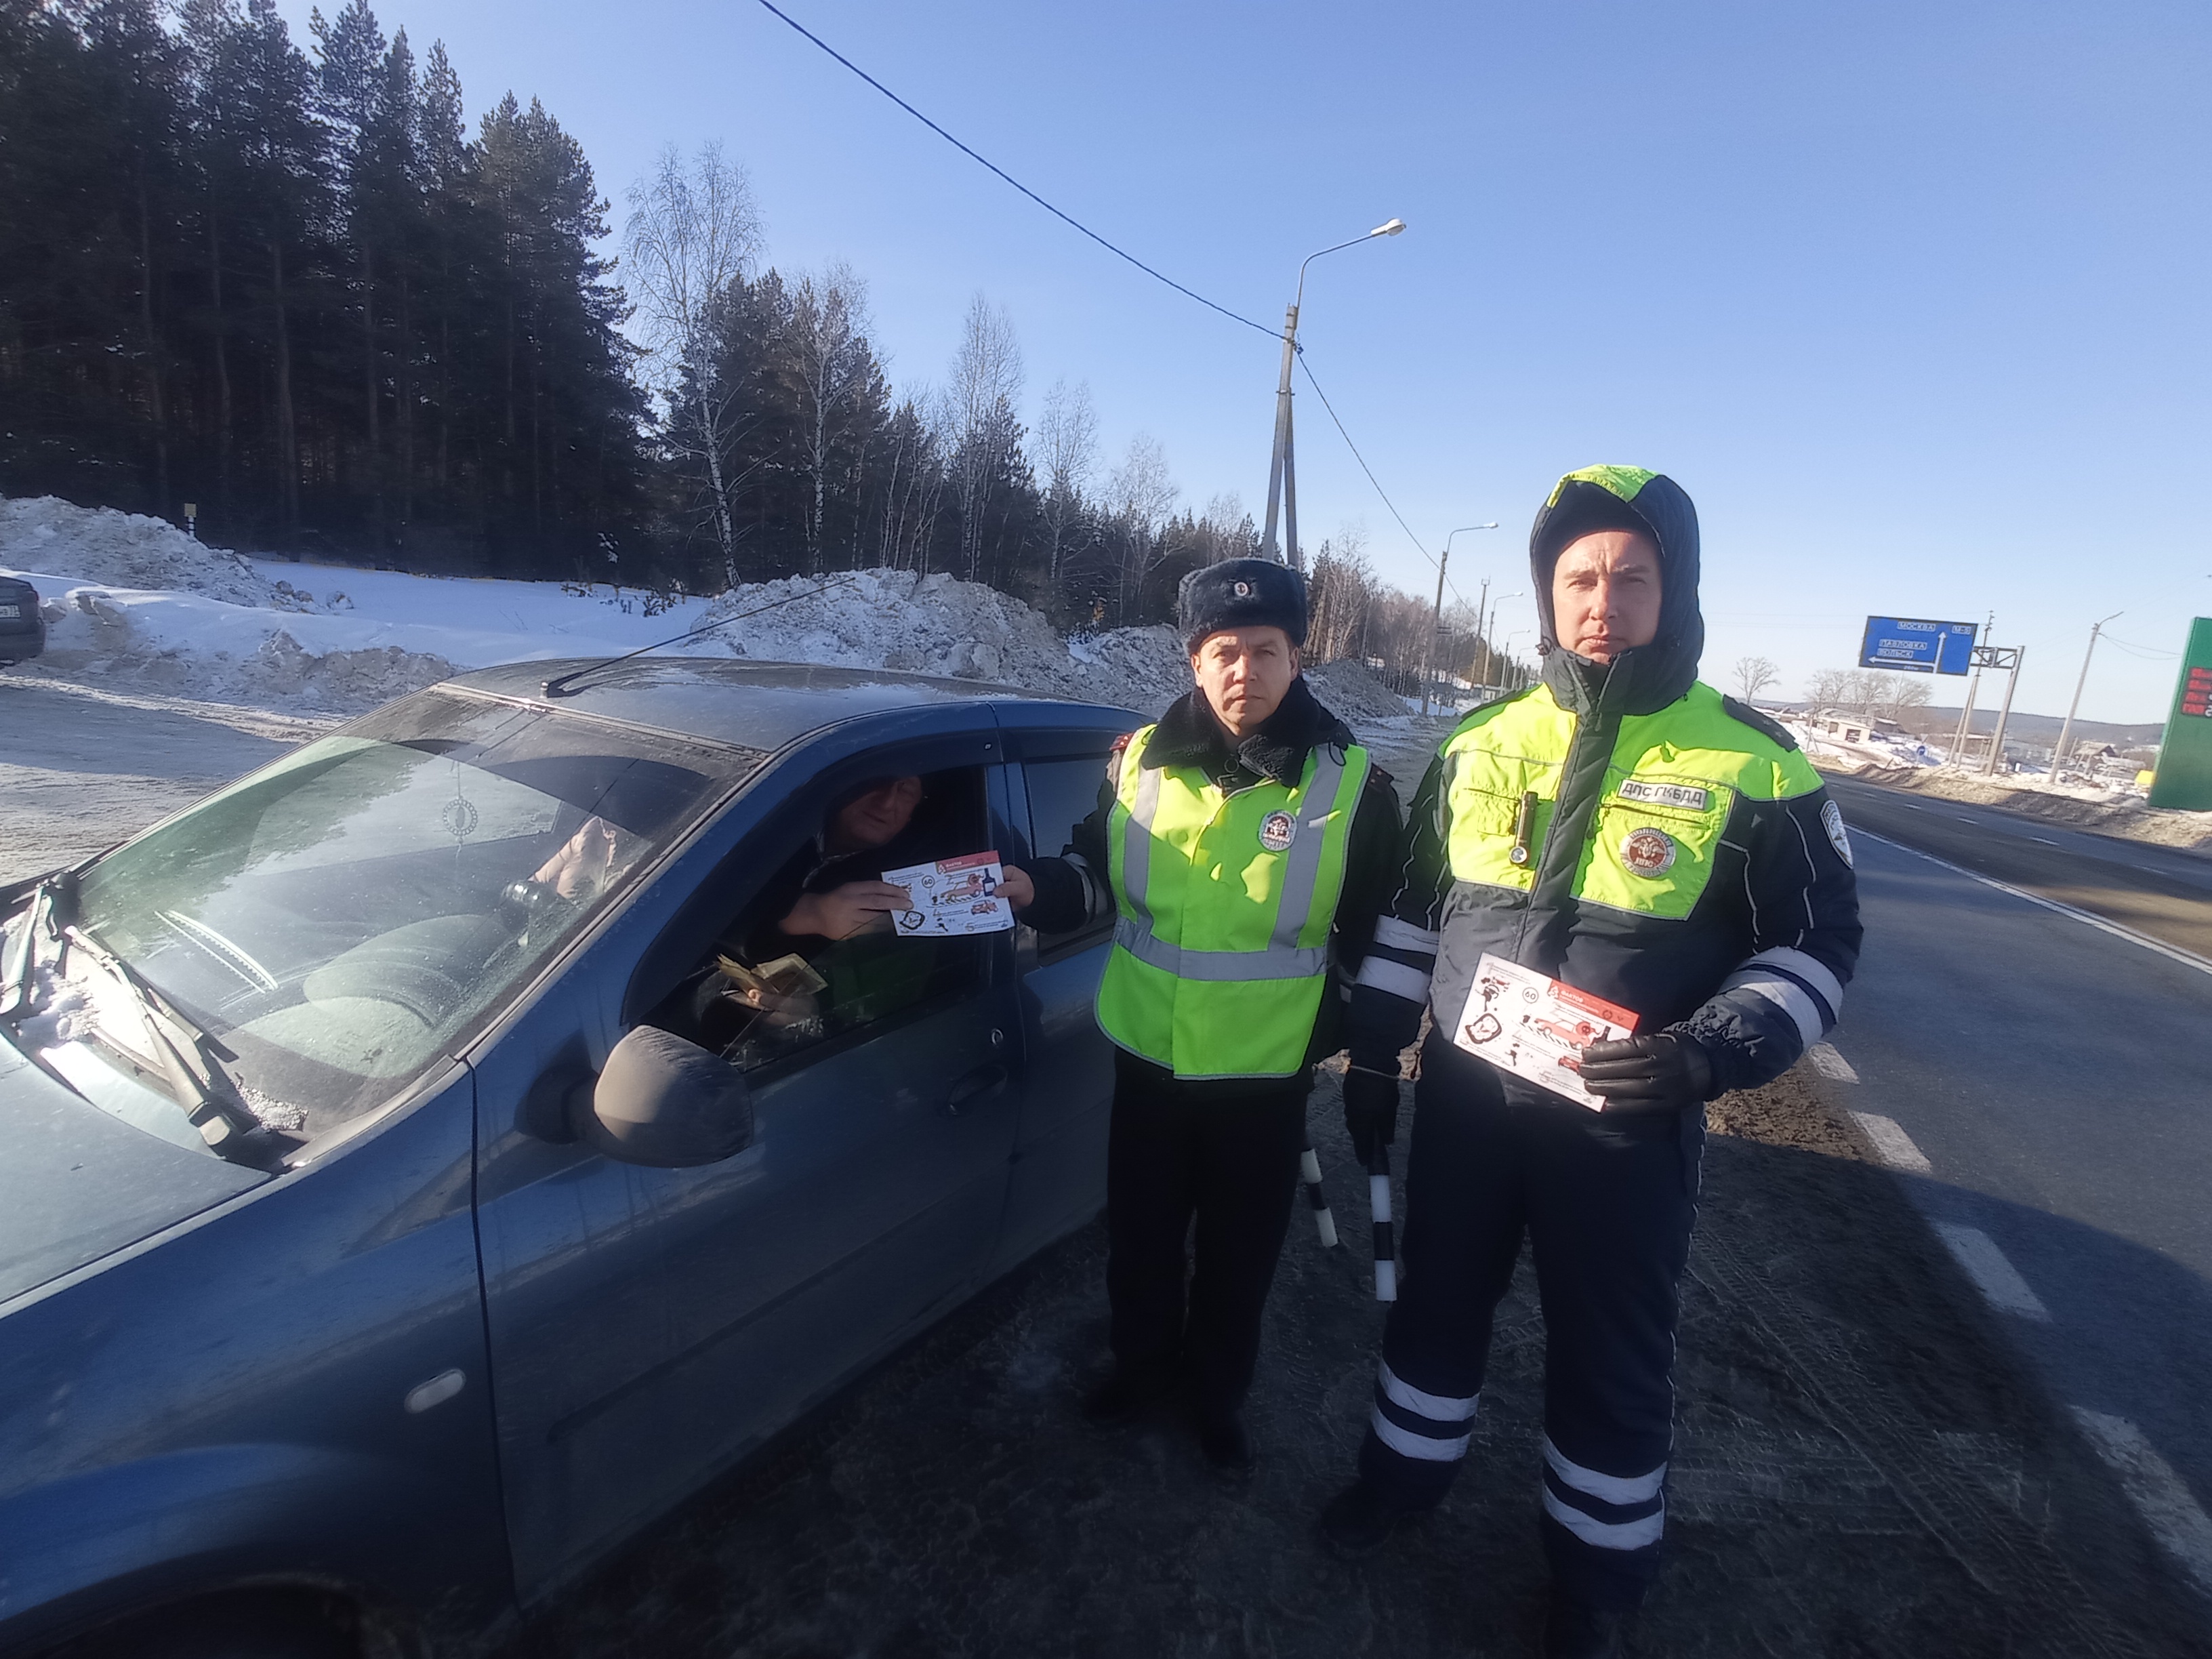 Сотрудники Госавтоинспекции рекомендуют водителям быть особенно внимательными и осторожными на дороге в зимнее время.